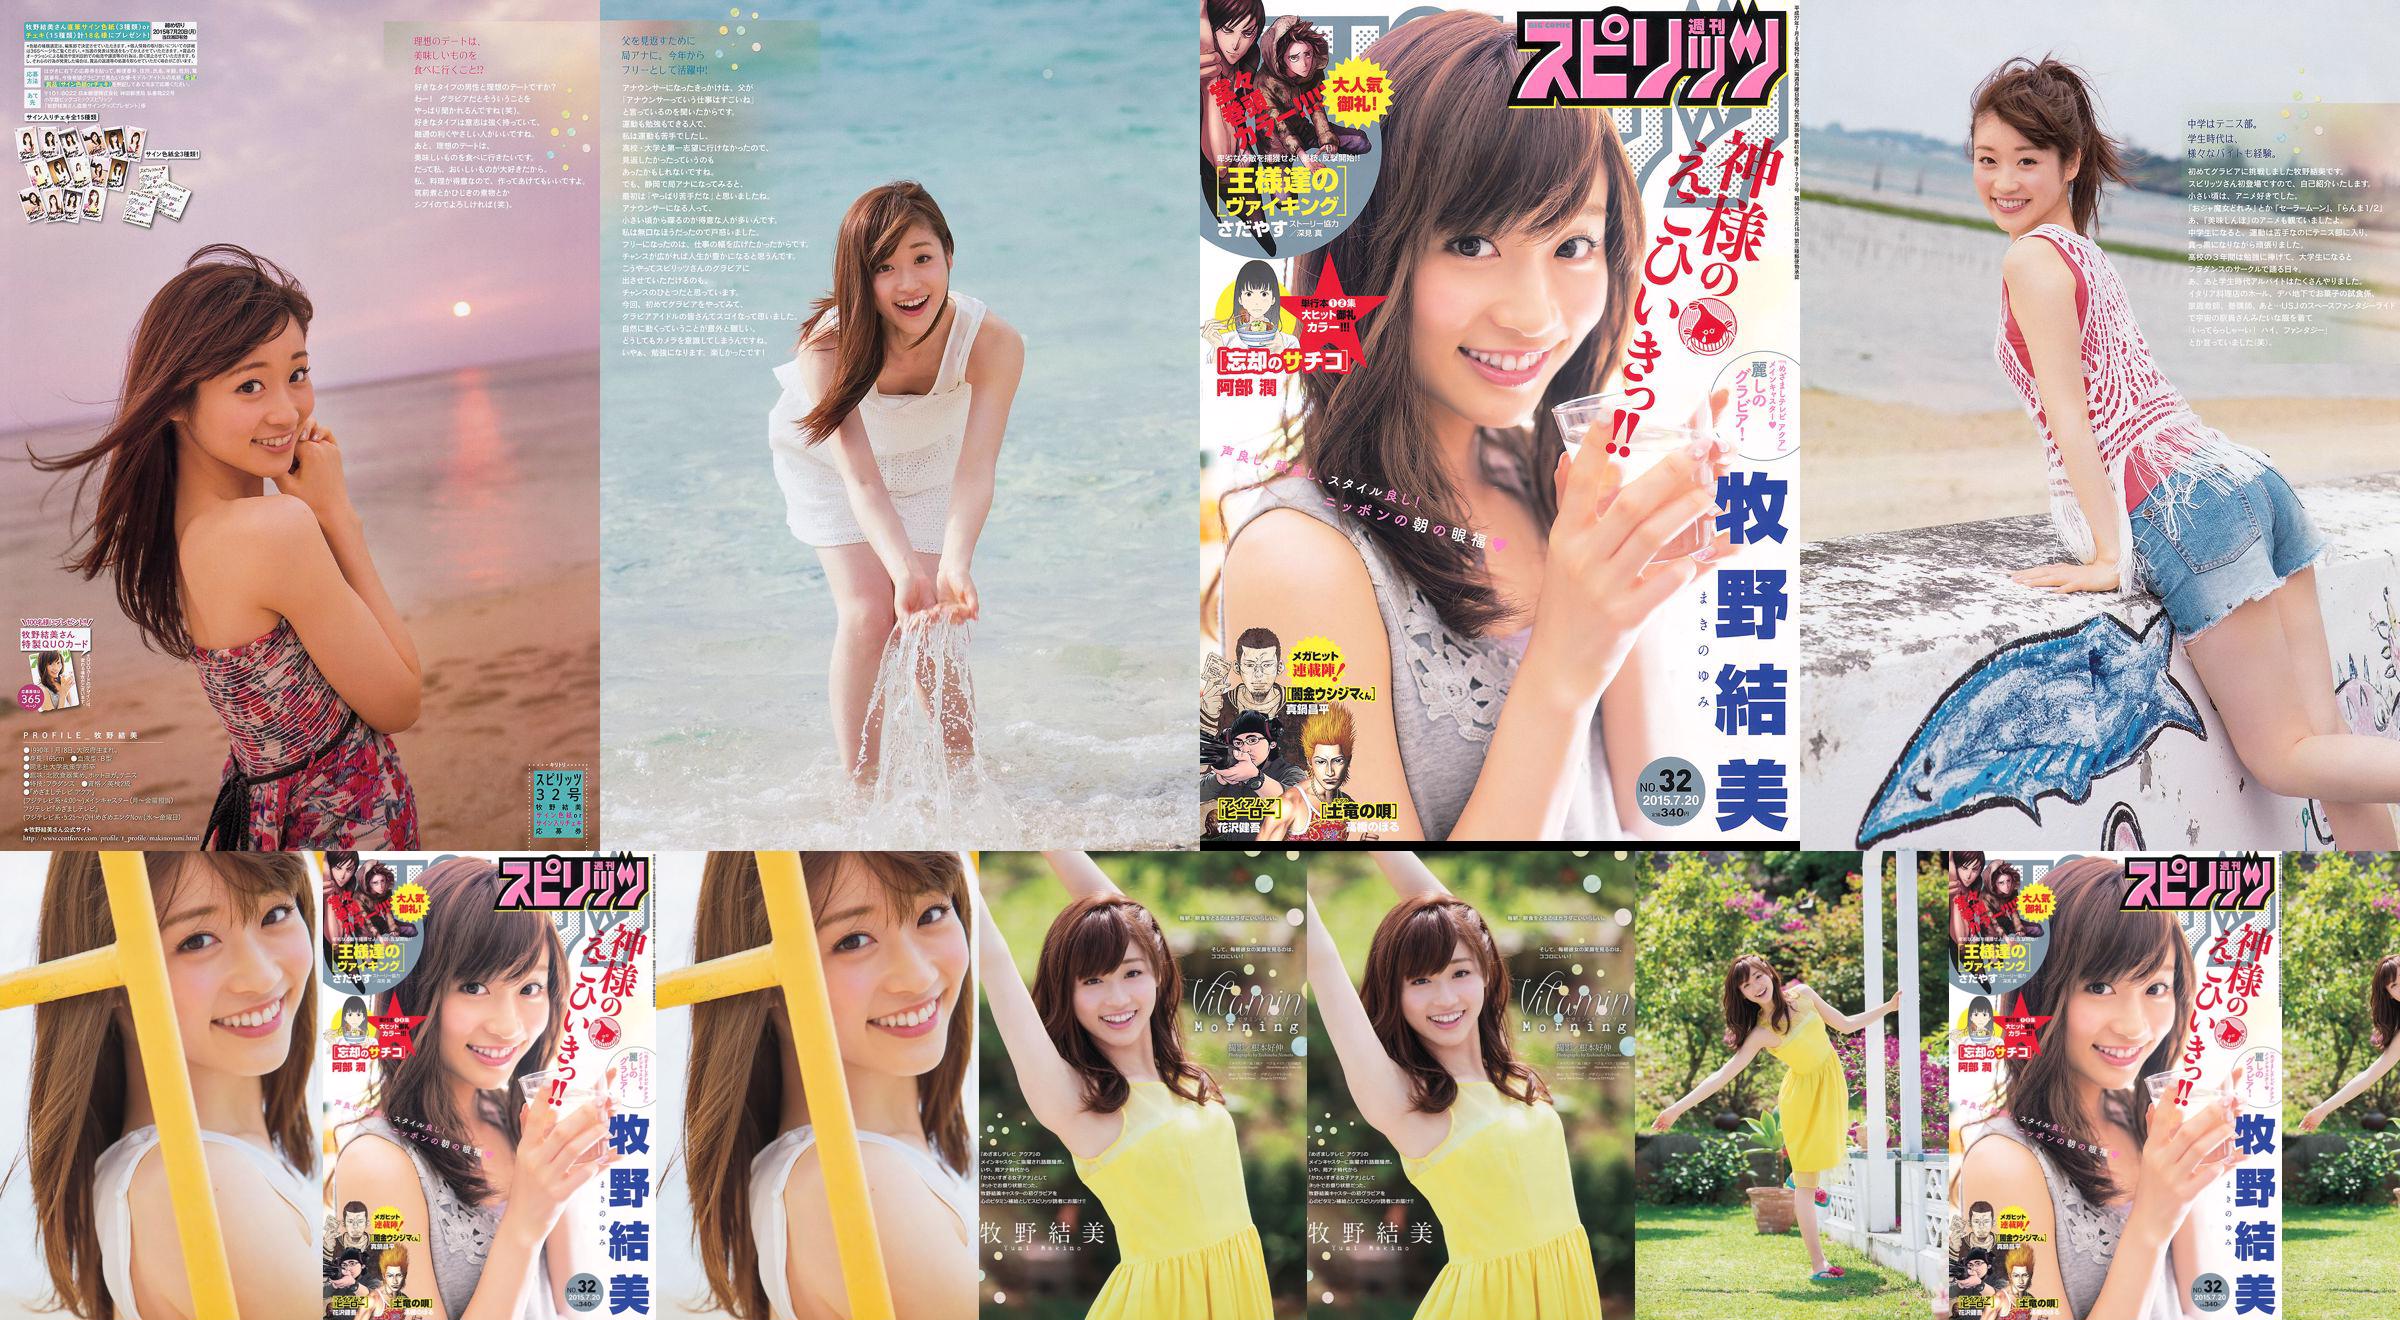 [Weekly Big Comic Spirits] Yumi Makino 2015 No.32 Photo Magazine No.8f8d79 Pagina 2